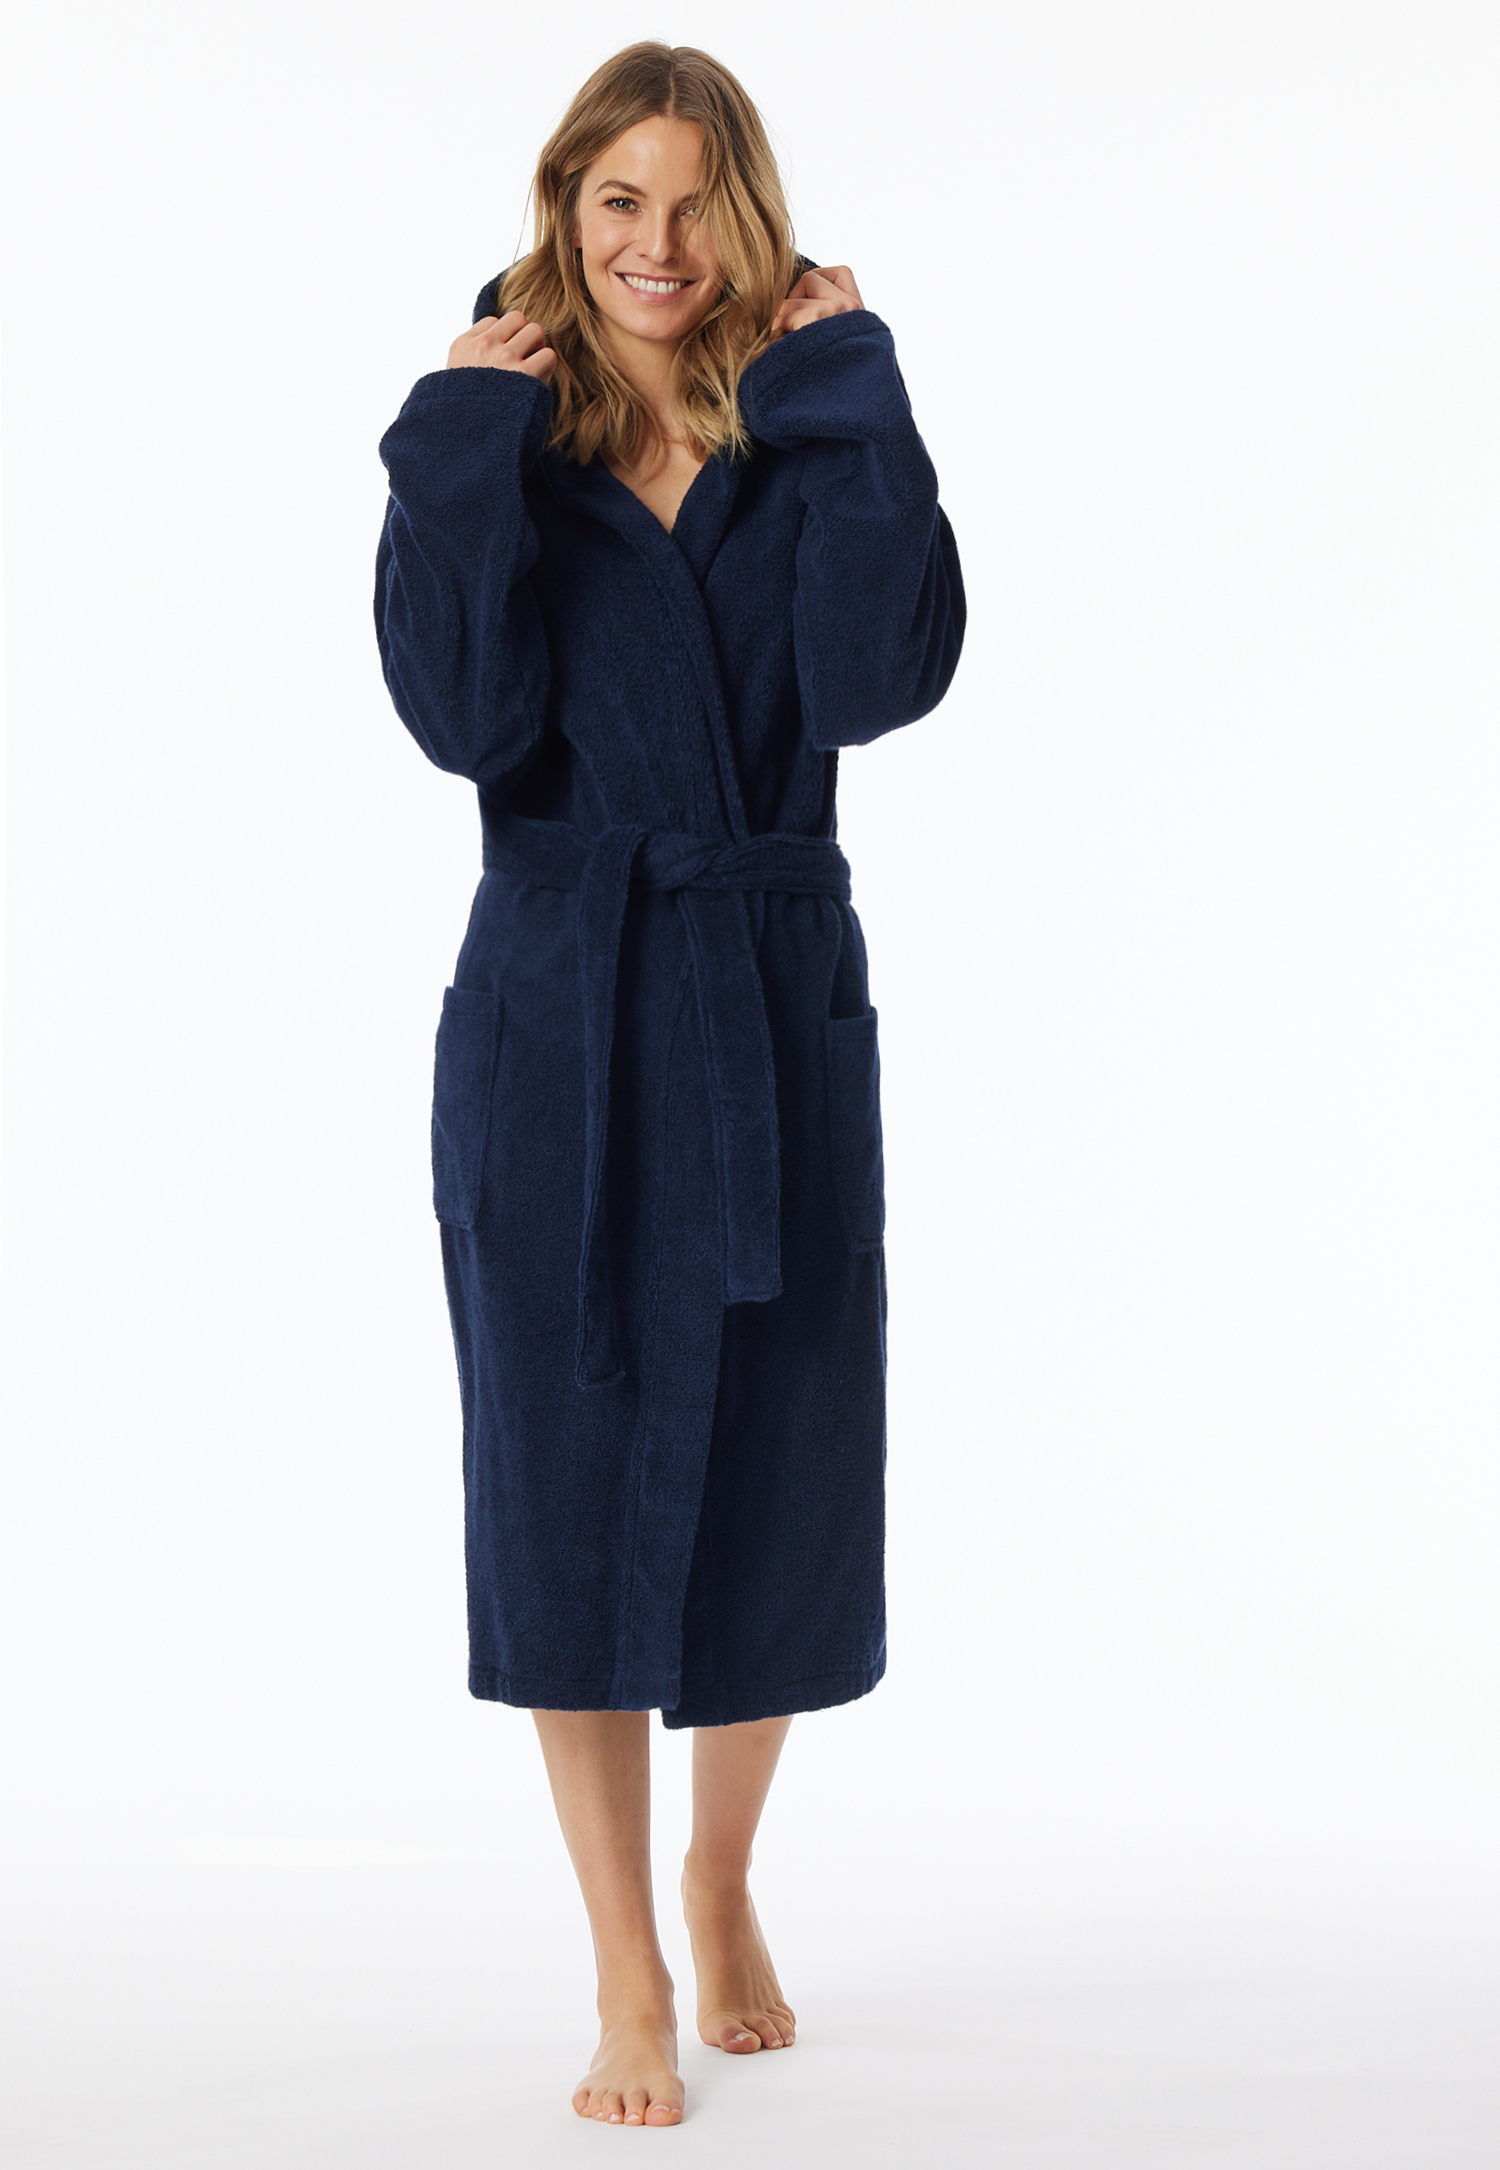 Artikel klicken und genauer betrachten! - dunkelblauer Bademantel für Damen - mit kuscheliger Kapuze - große Taschen für Extra-Komfort - Bindegürtel - Gesamtlänge: 120 cm - in weicher, gemütlicher Frottee-Qualität | im Online Shop kaufen